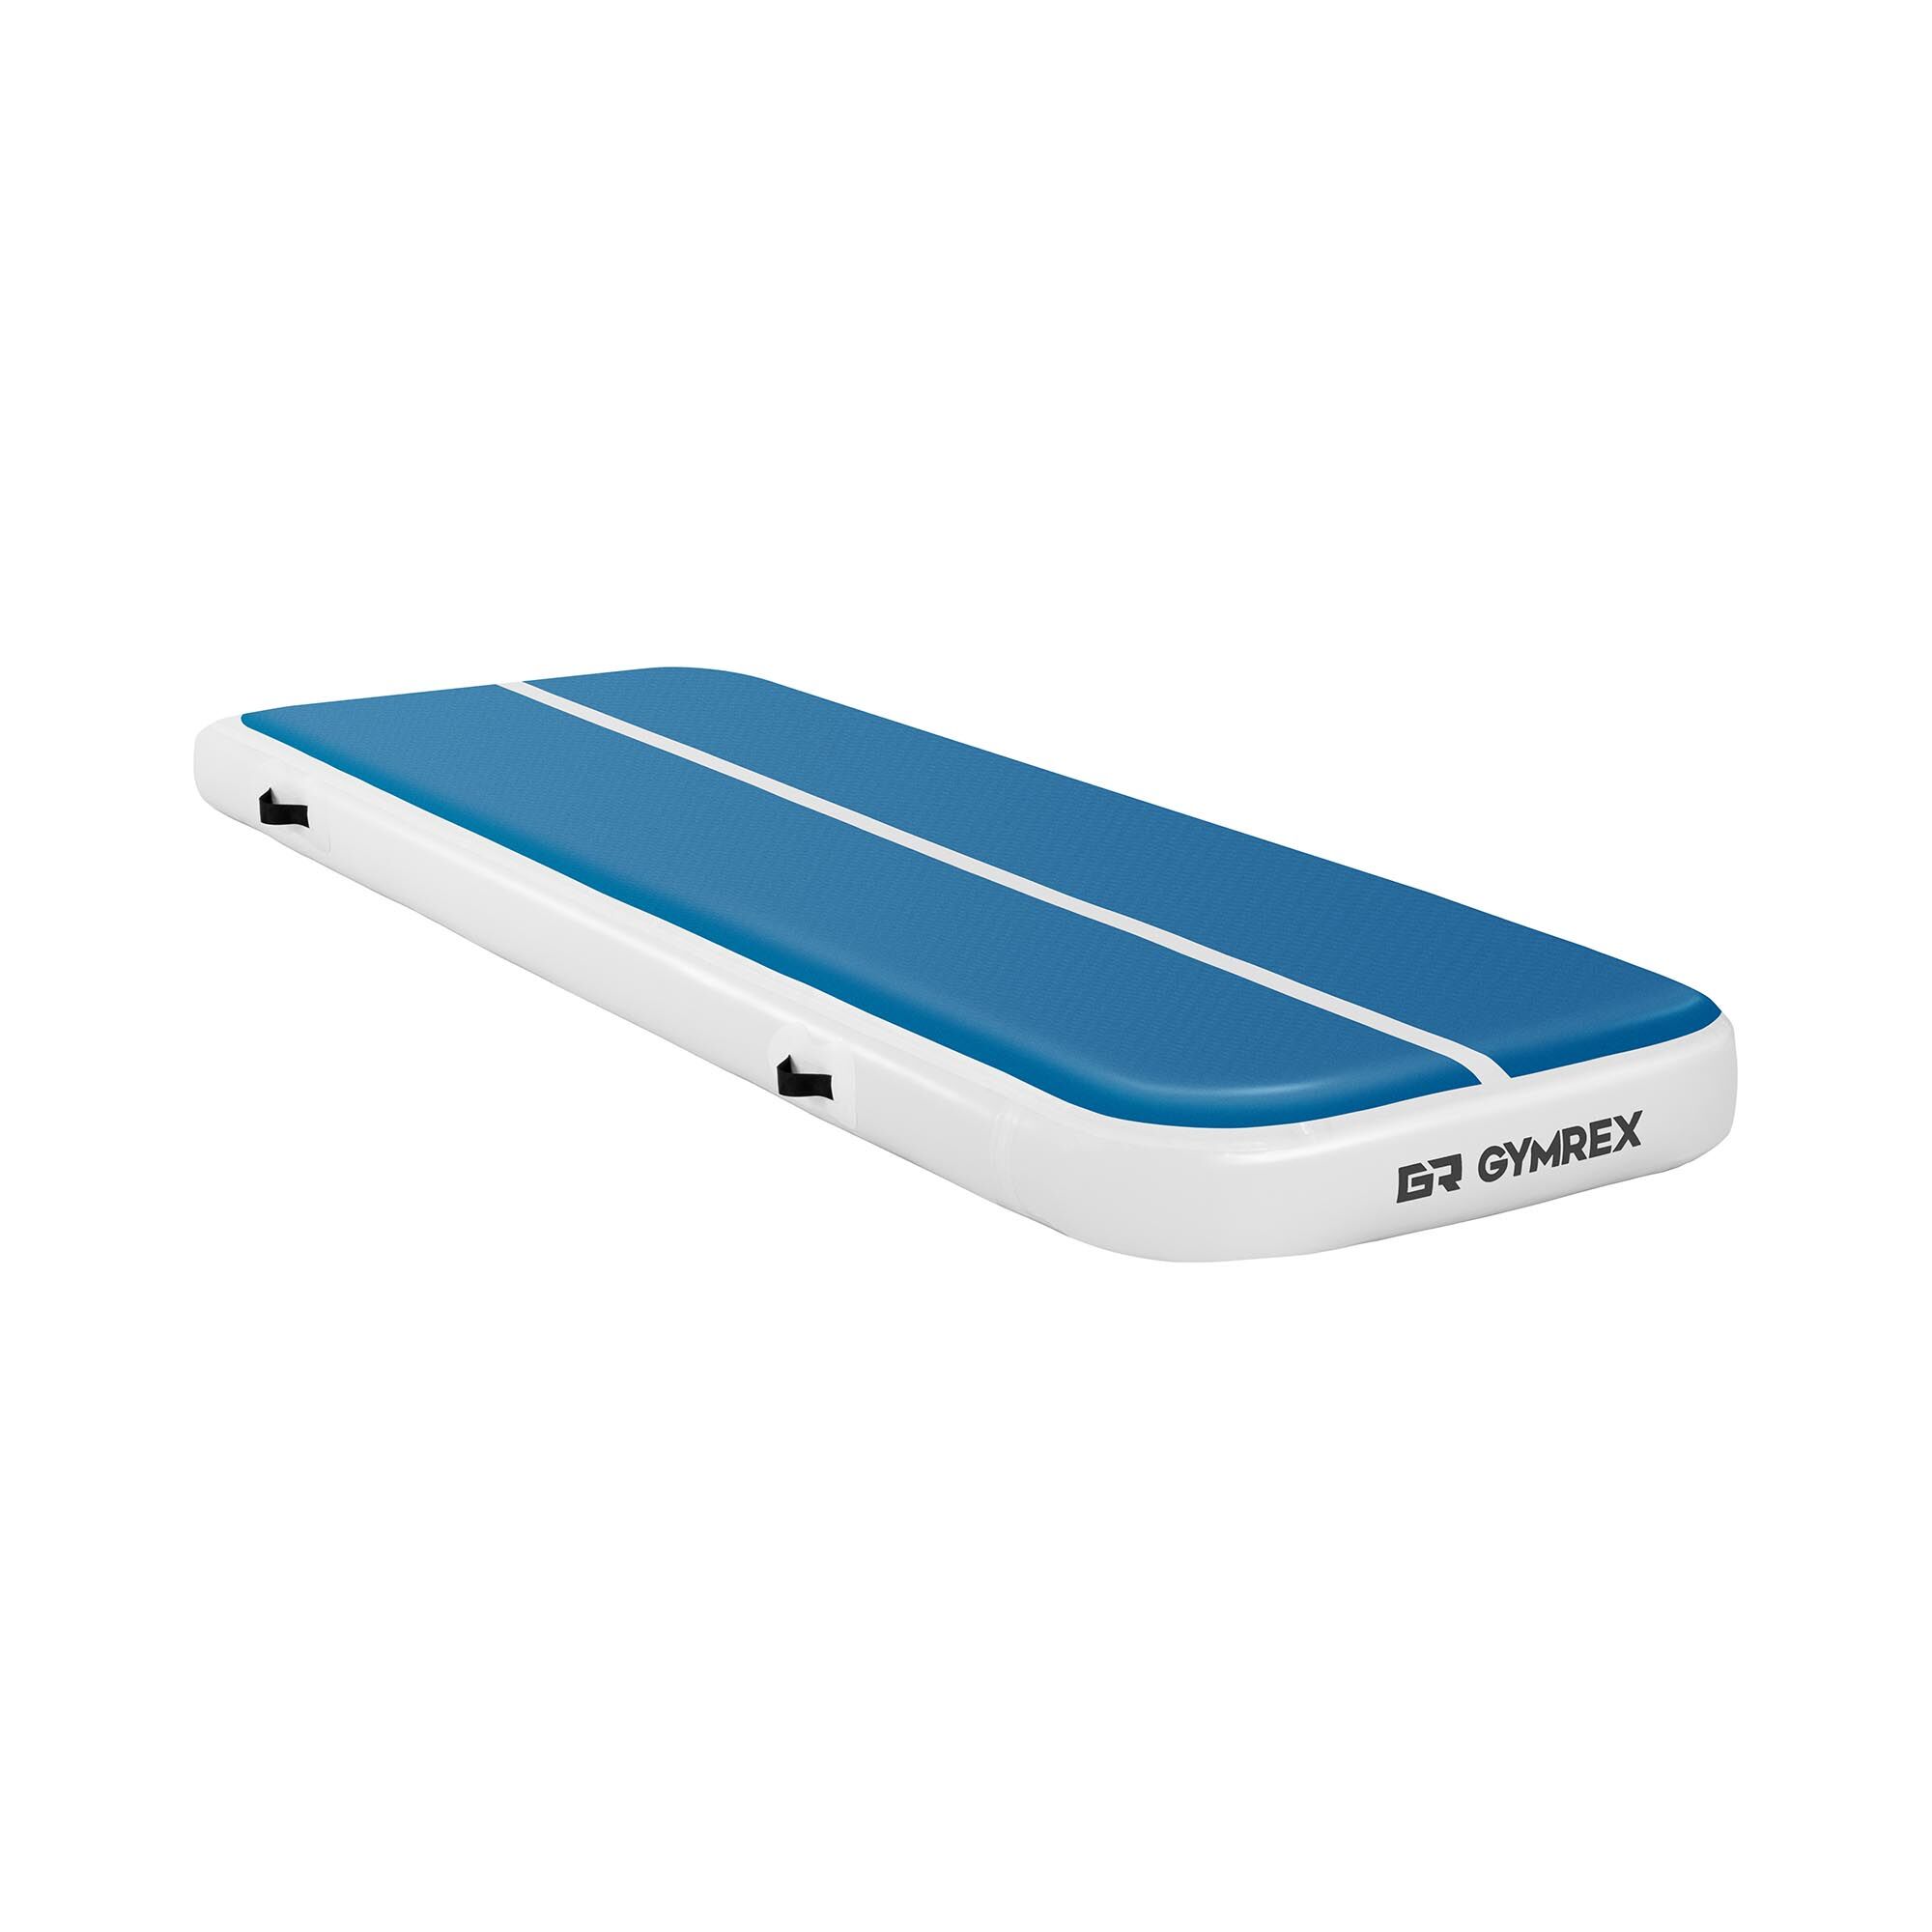 Gymrex Aufblasbare Turnmatte - Airtrack - 300 x 100 x 20 cm - 150 kg - blau/weiß